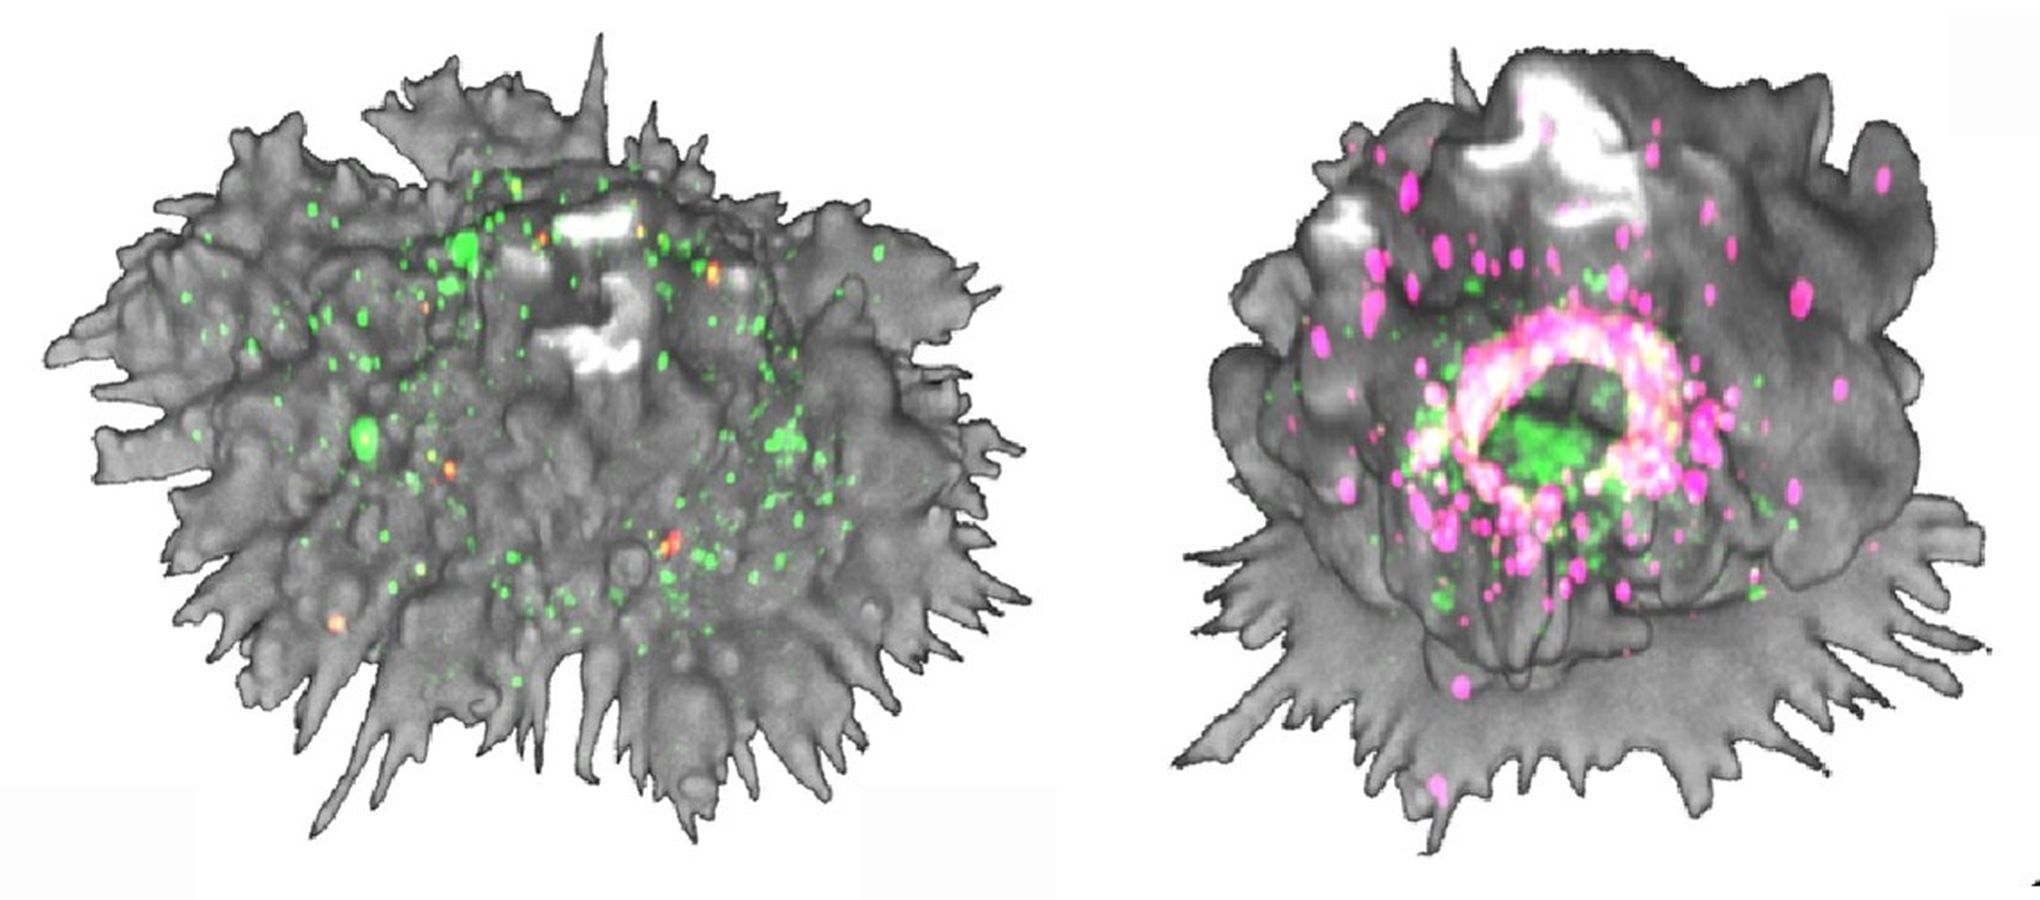 Cèl·lula dendrítica madura i transformació massiva de la morfologia de la cèl·lula dendrítica 60 min després de la captació del VIH